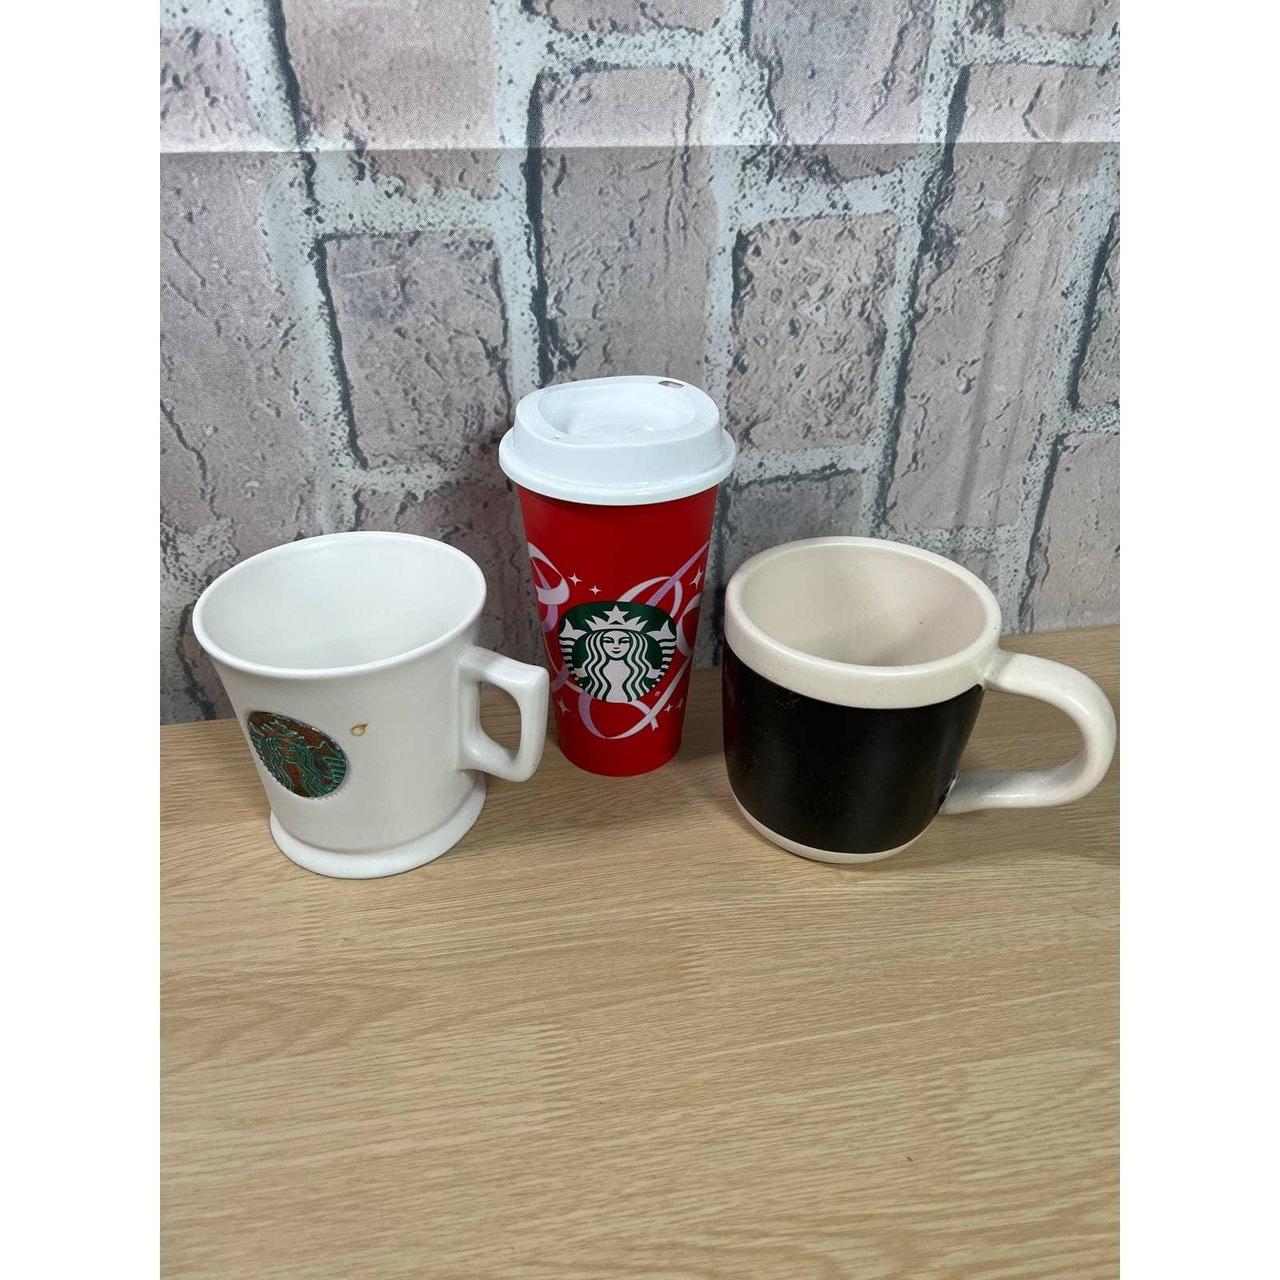 Starbucks Coffee Mug Holiday 2013